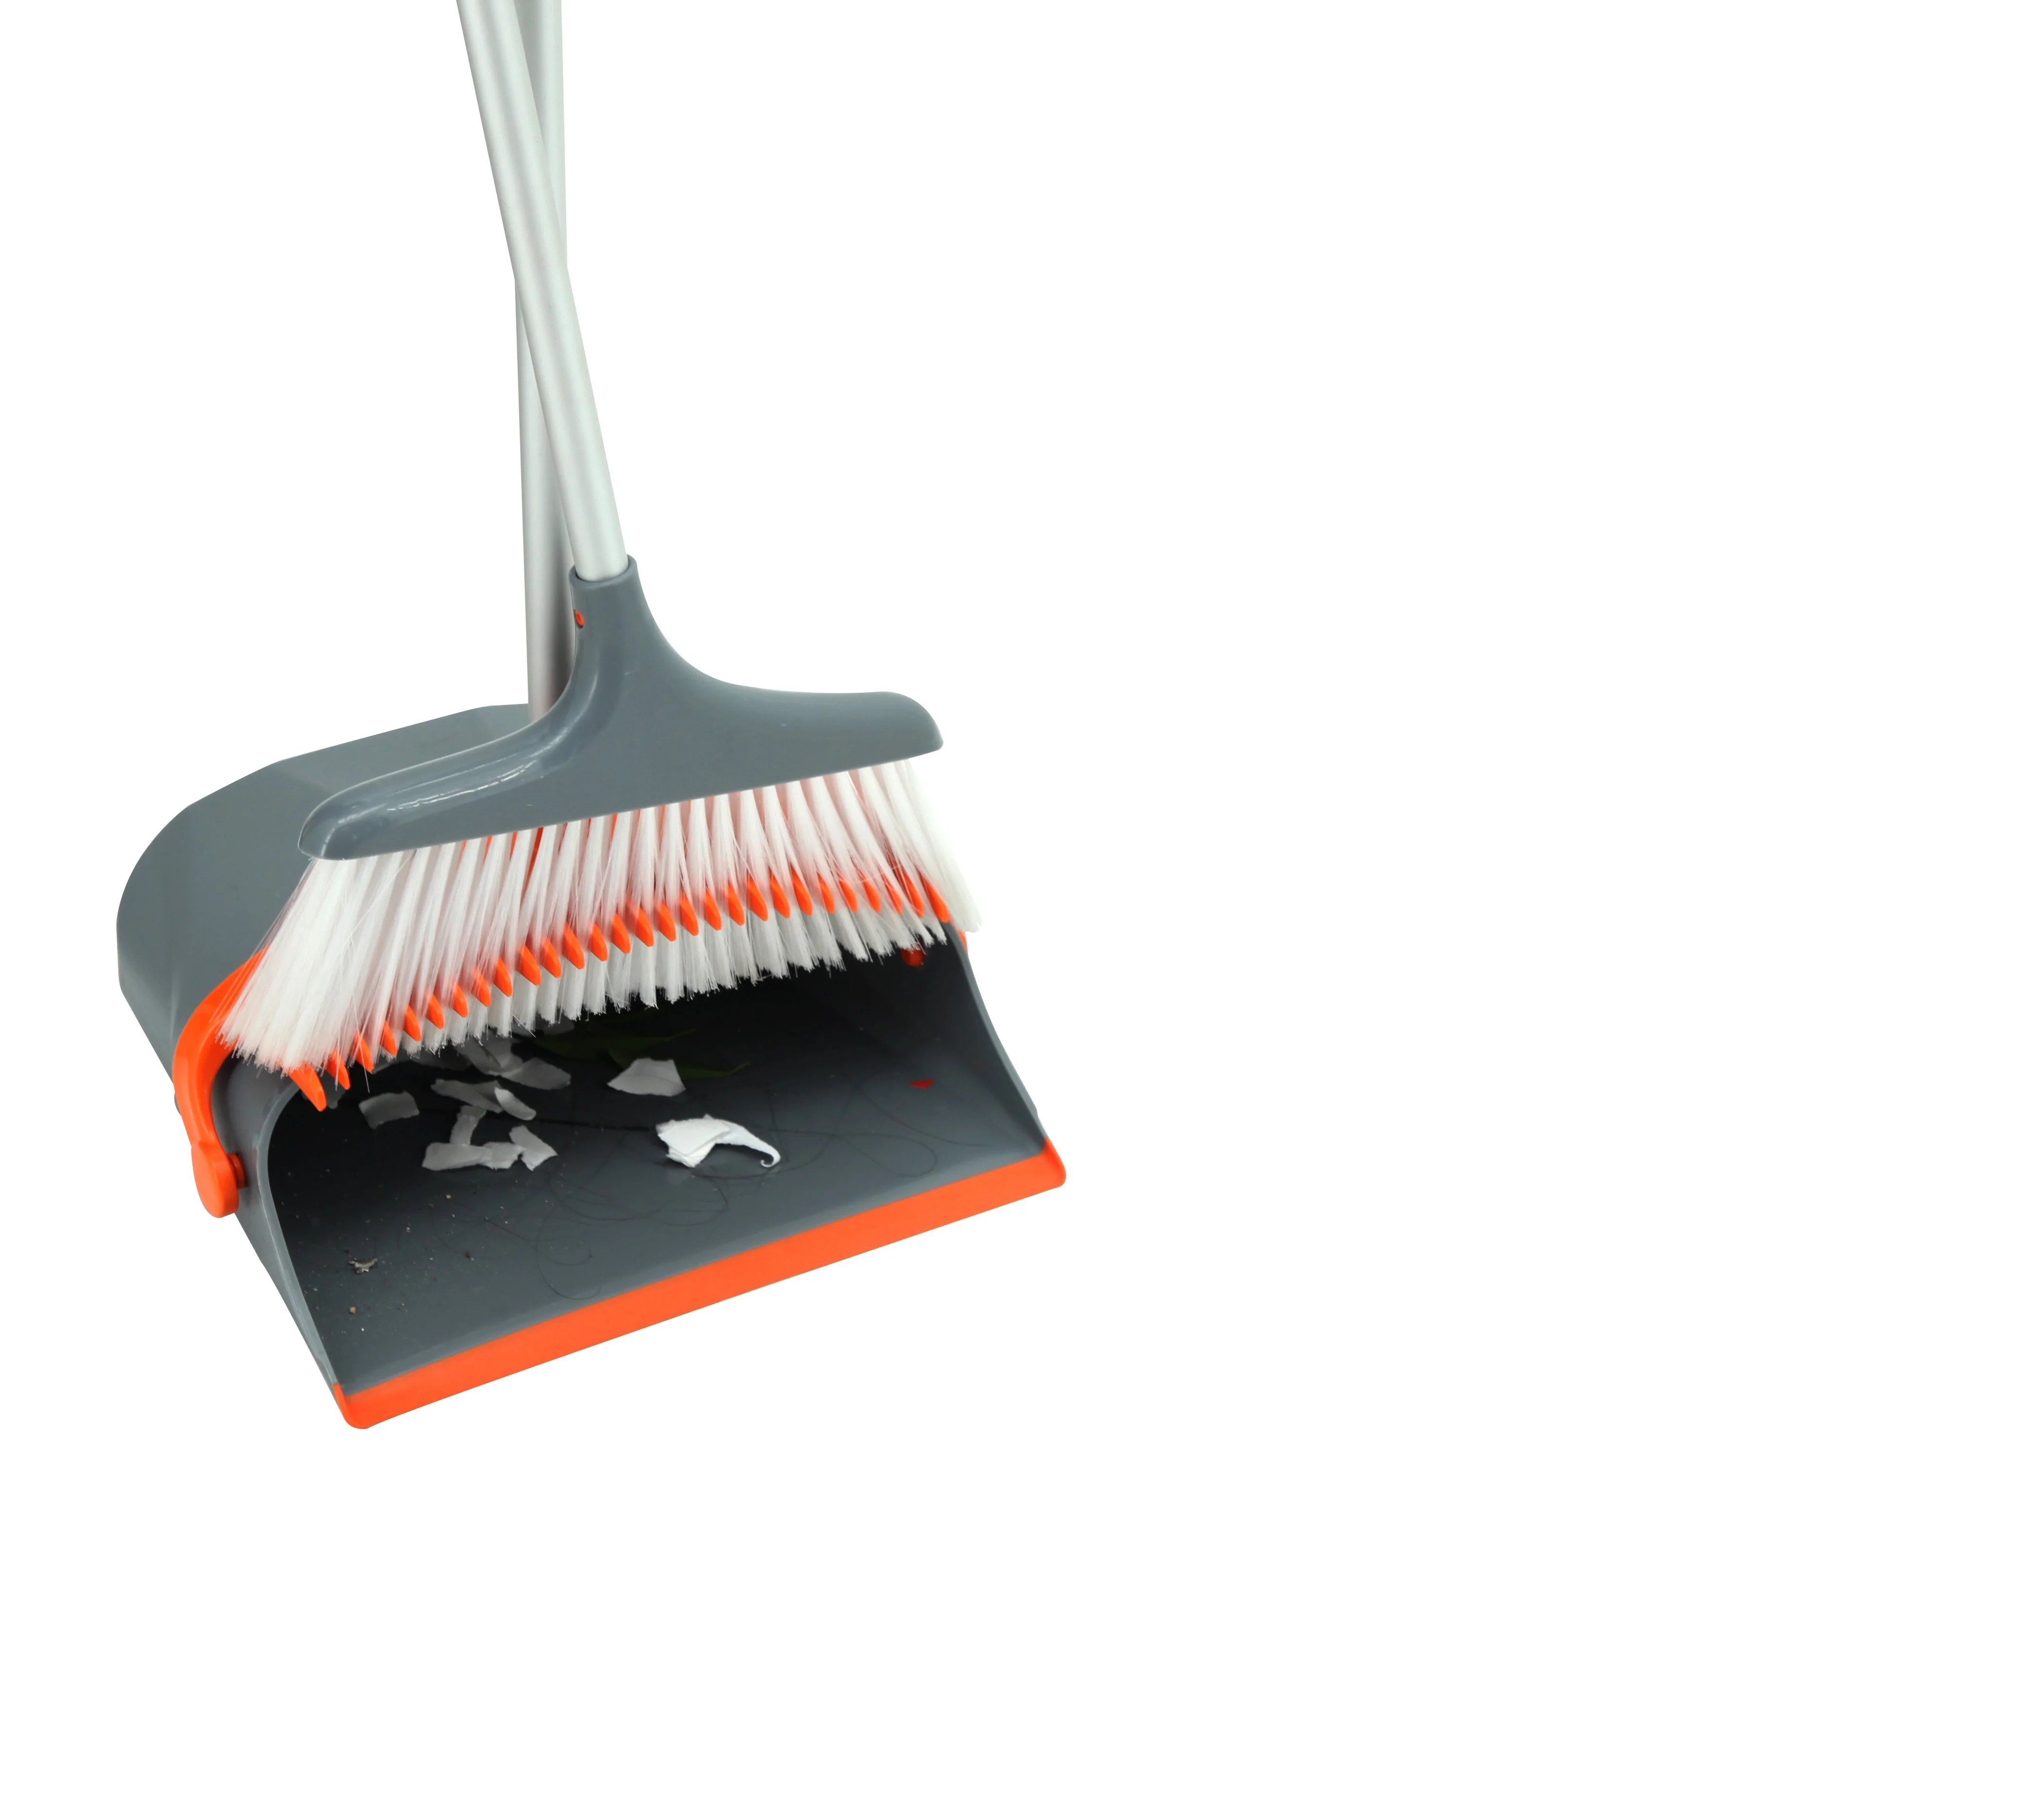 
aluminum handle pole orange broom and dustpan set  (60830050513)